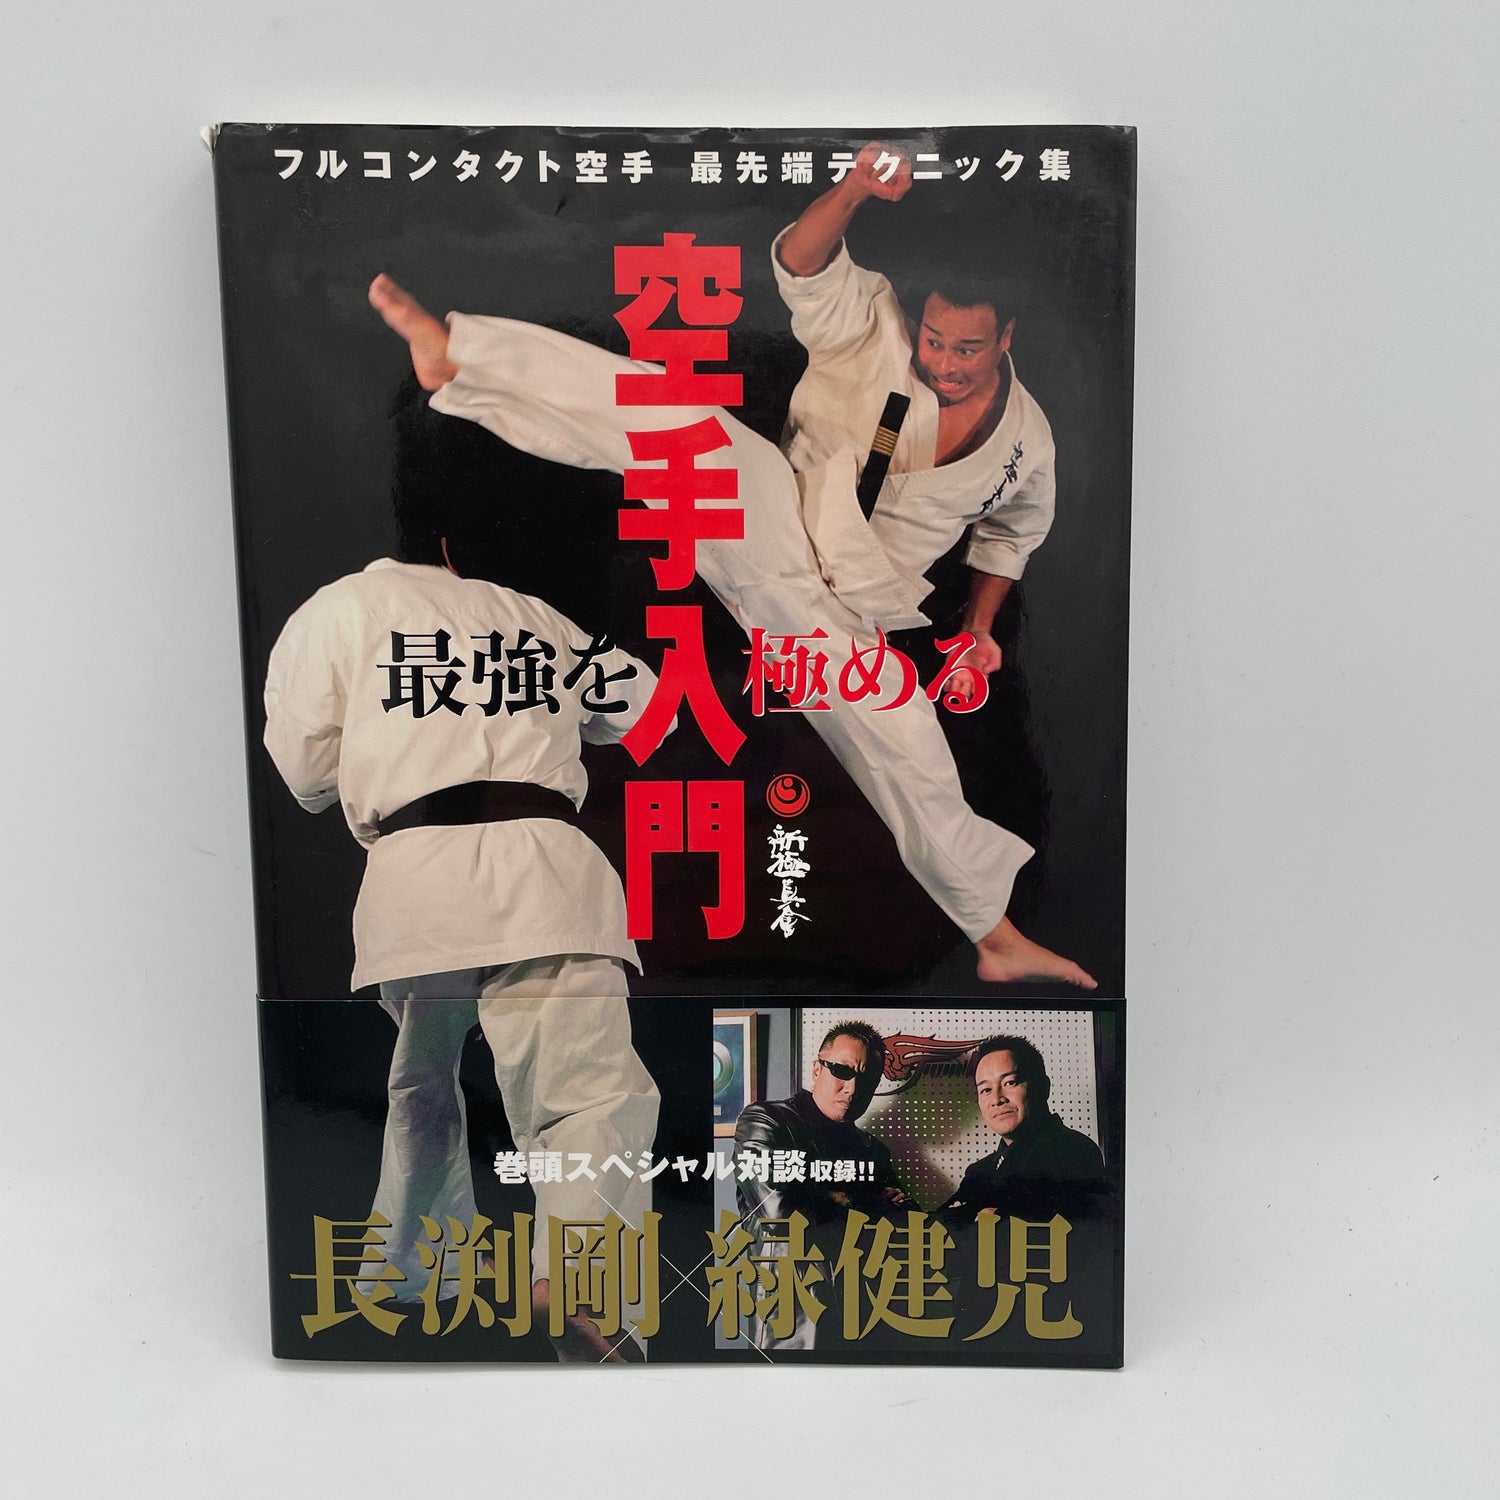 Introducción al libro de karate Shinkyokushinkai de contacto completo más fuerte de Kenji Midori (usado)